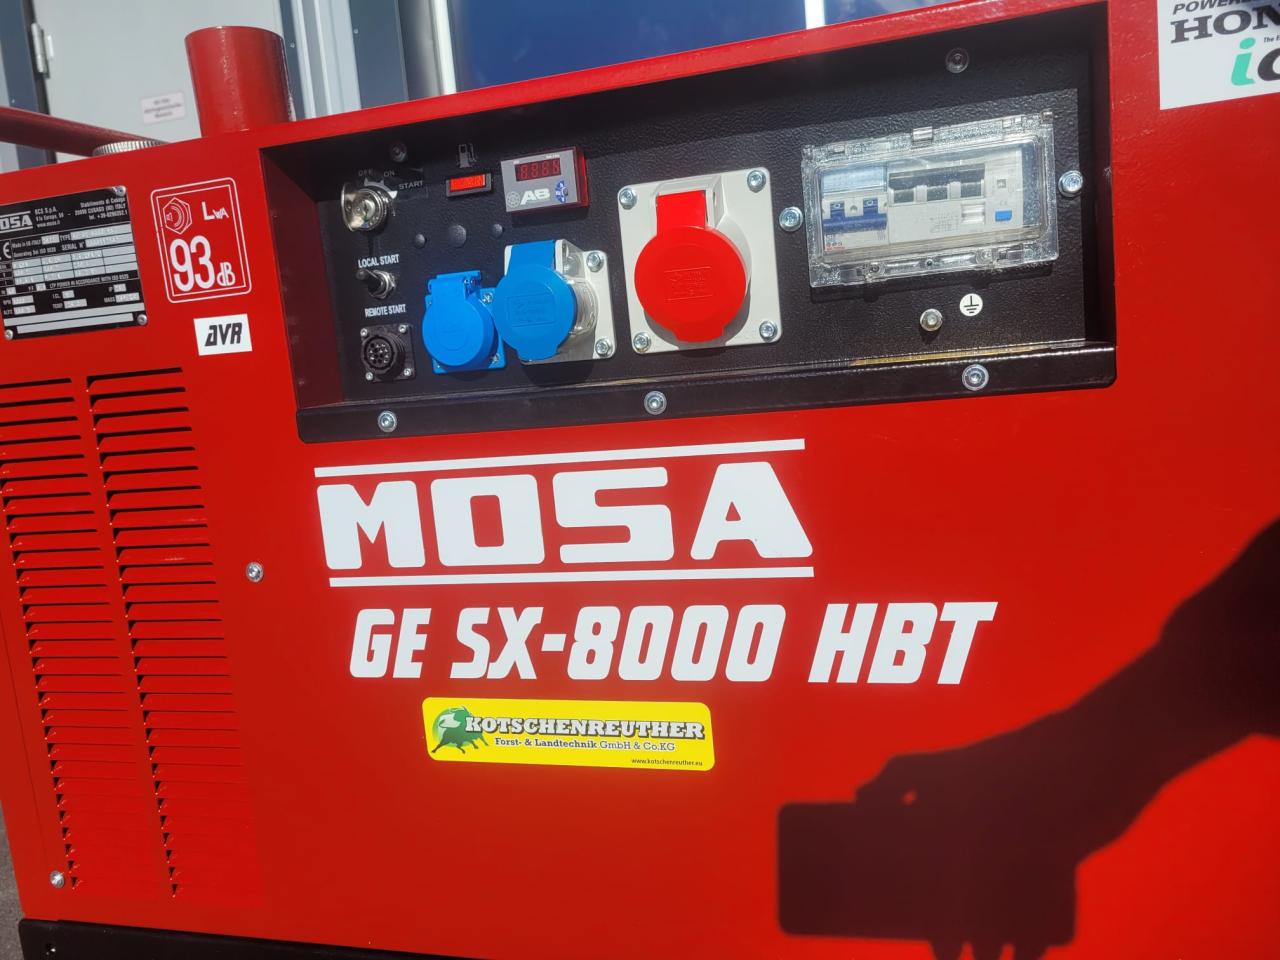 MOSA GE SX 8000 HBT Left